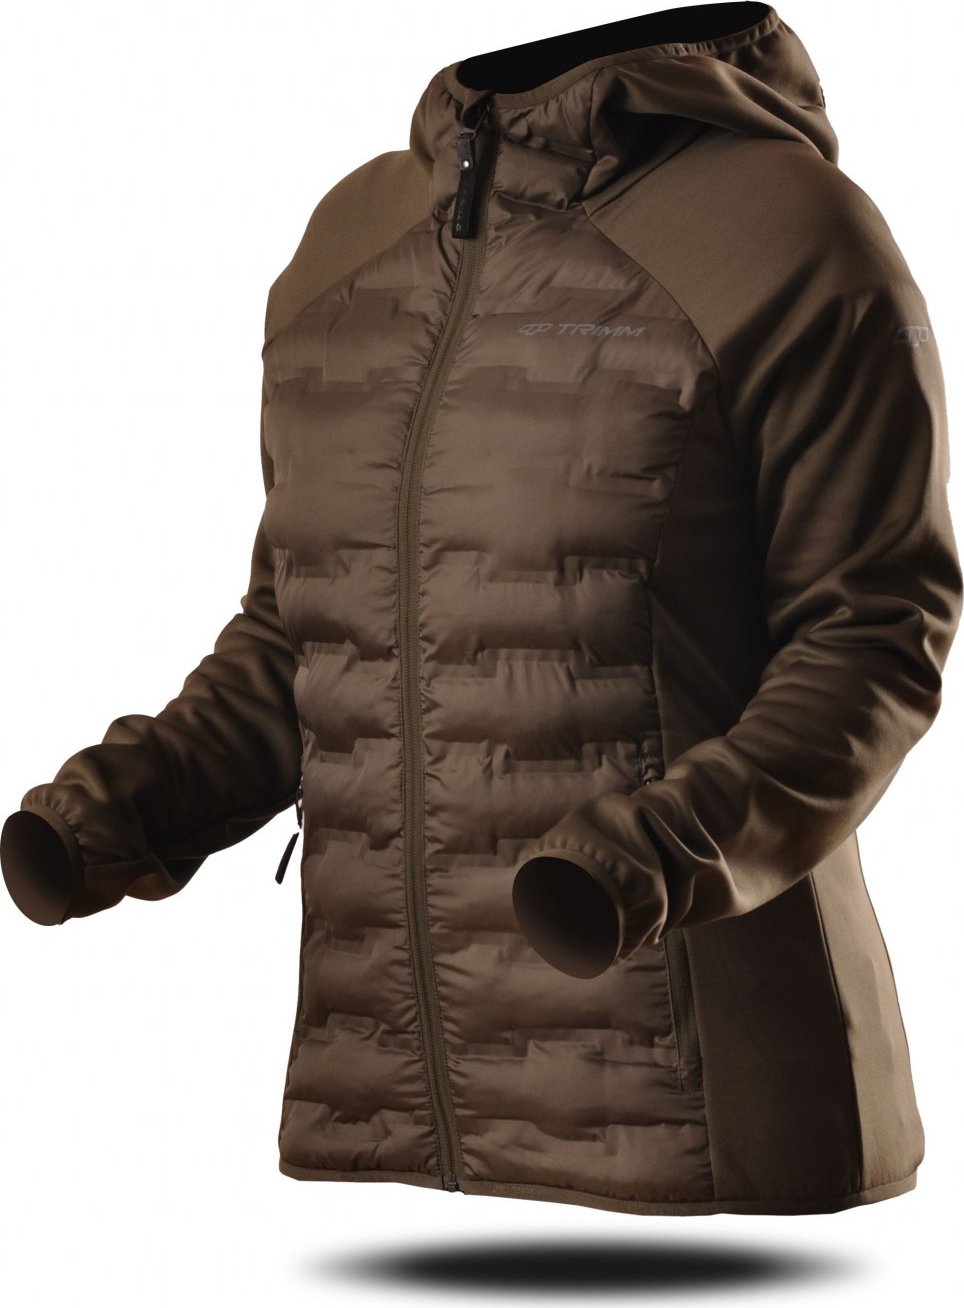 Dámská prošívaná bunda TRIMM Ervi Lady dark khaki/khaki Velikost: XL, Barva: dark khaki/ khaki